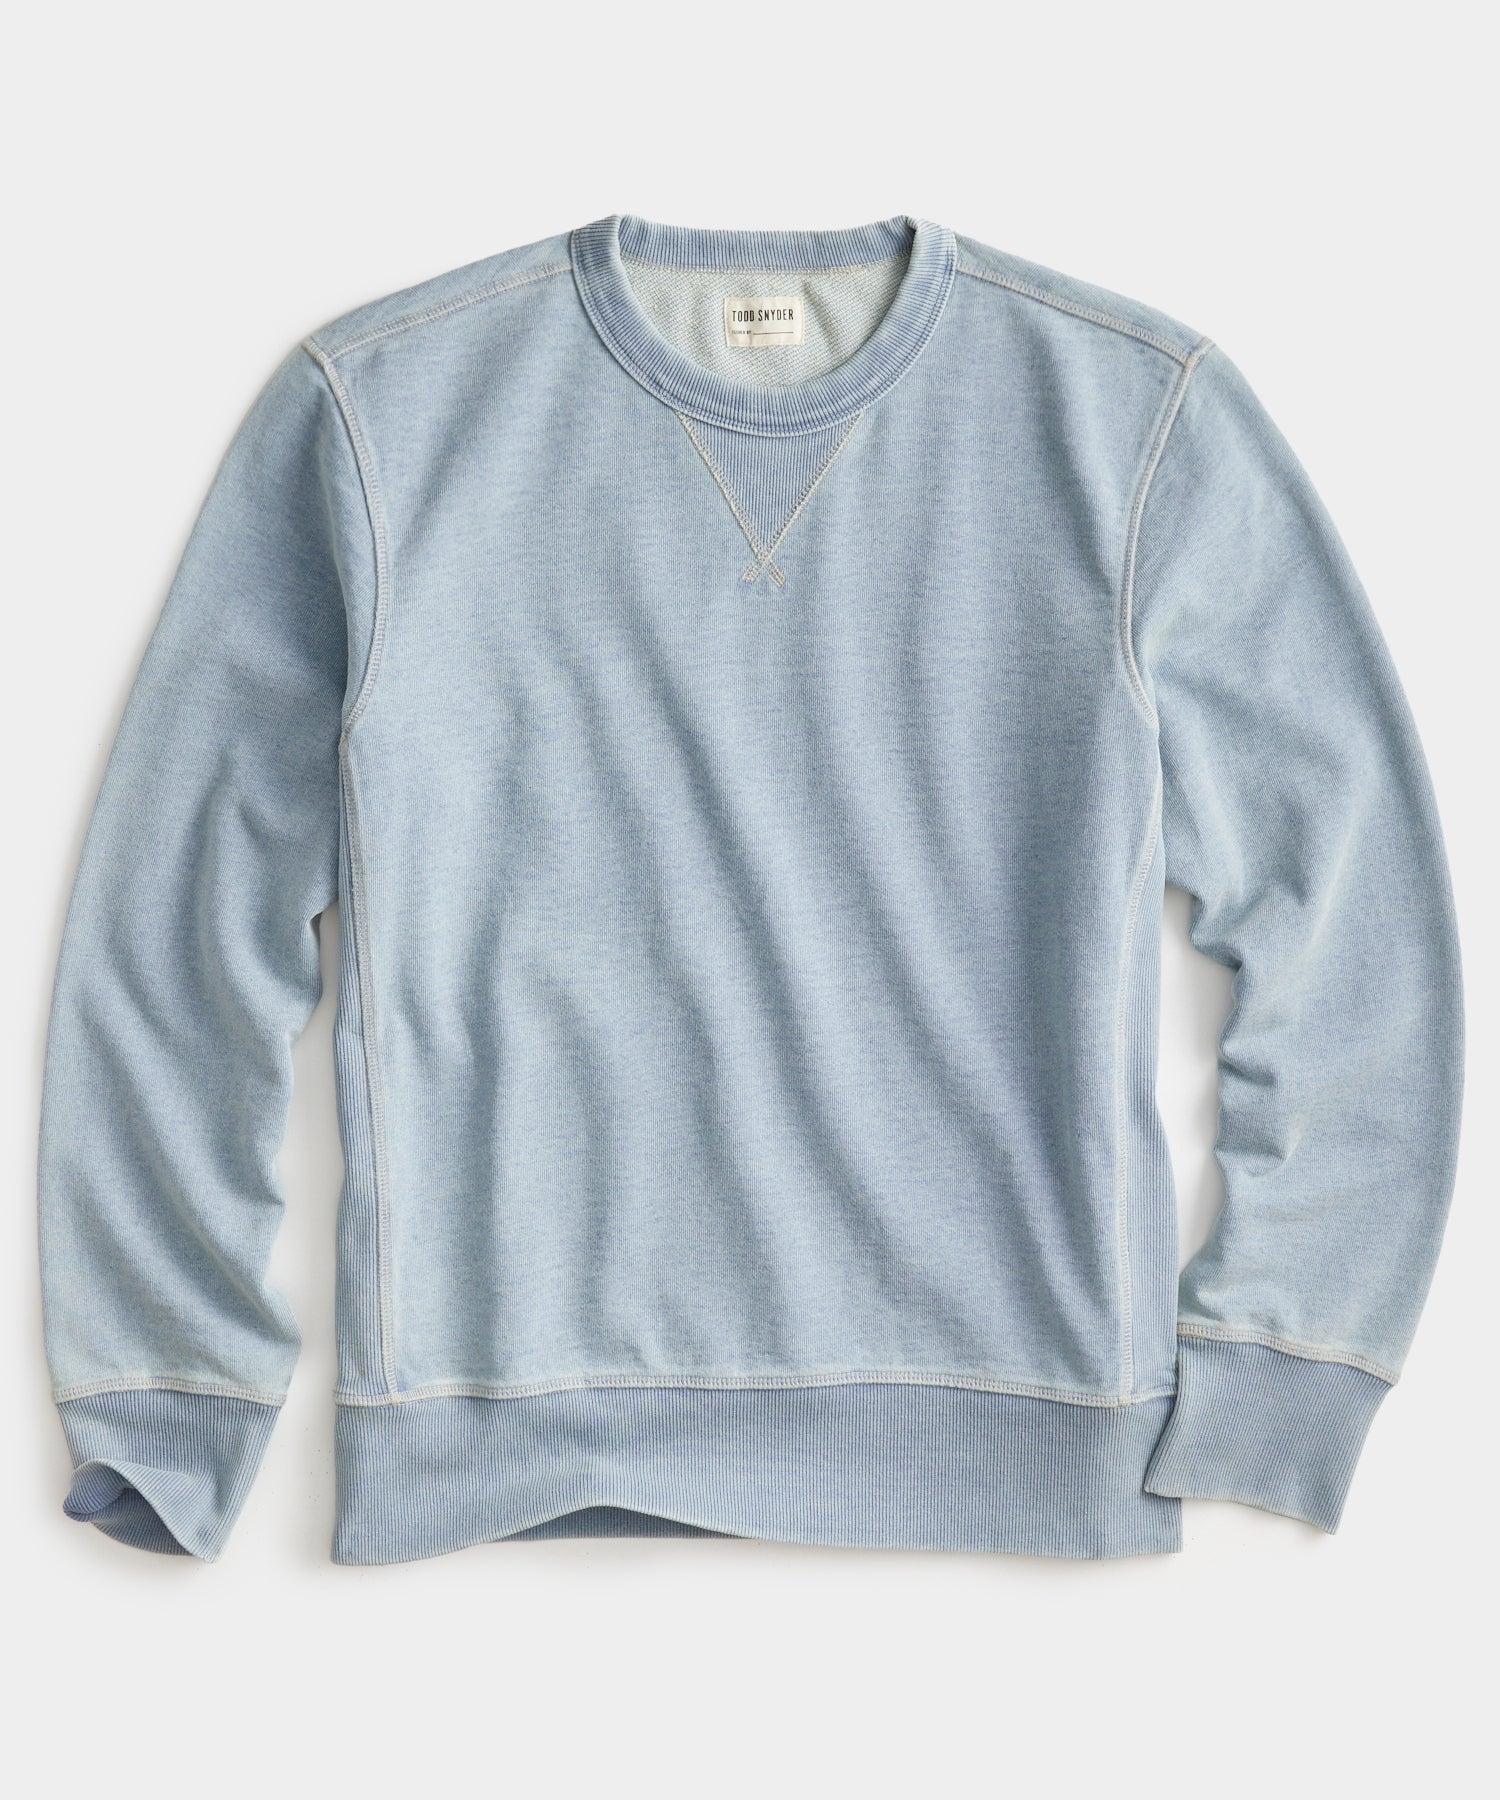 Todd Snyder Indigo Sweatshirt In Tinted Bleach Wash in Blue for